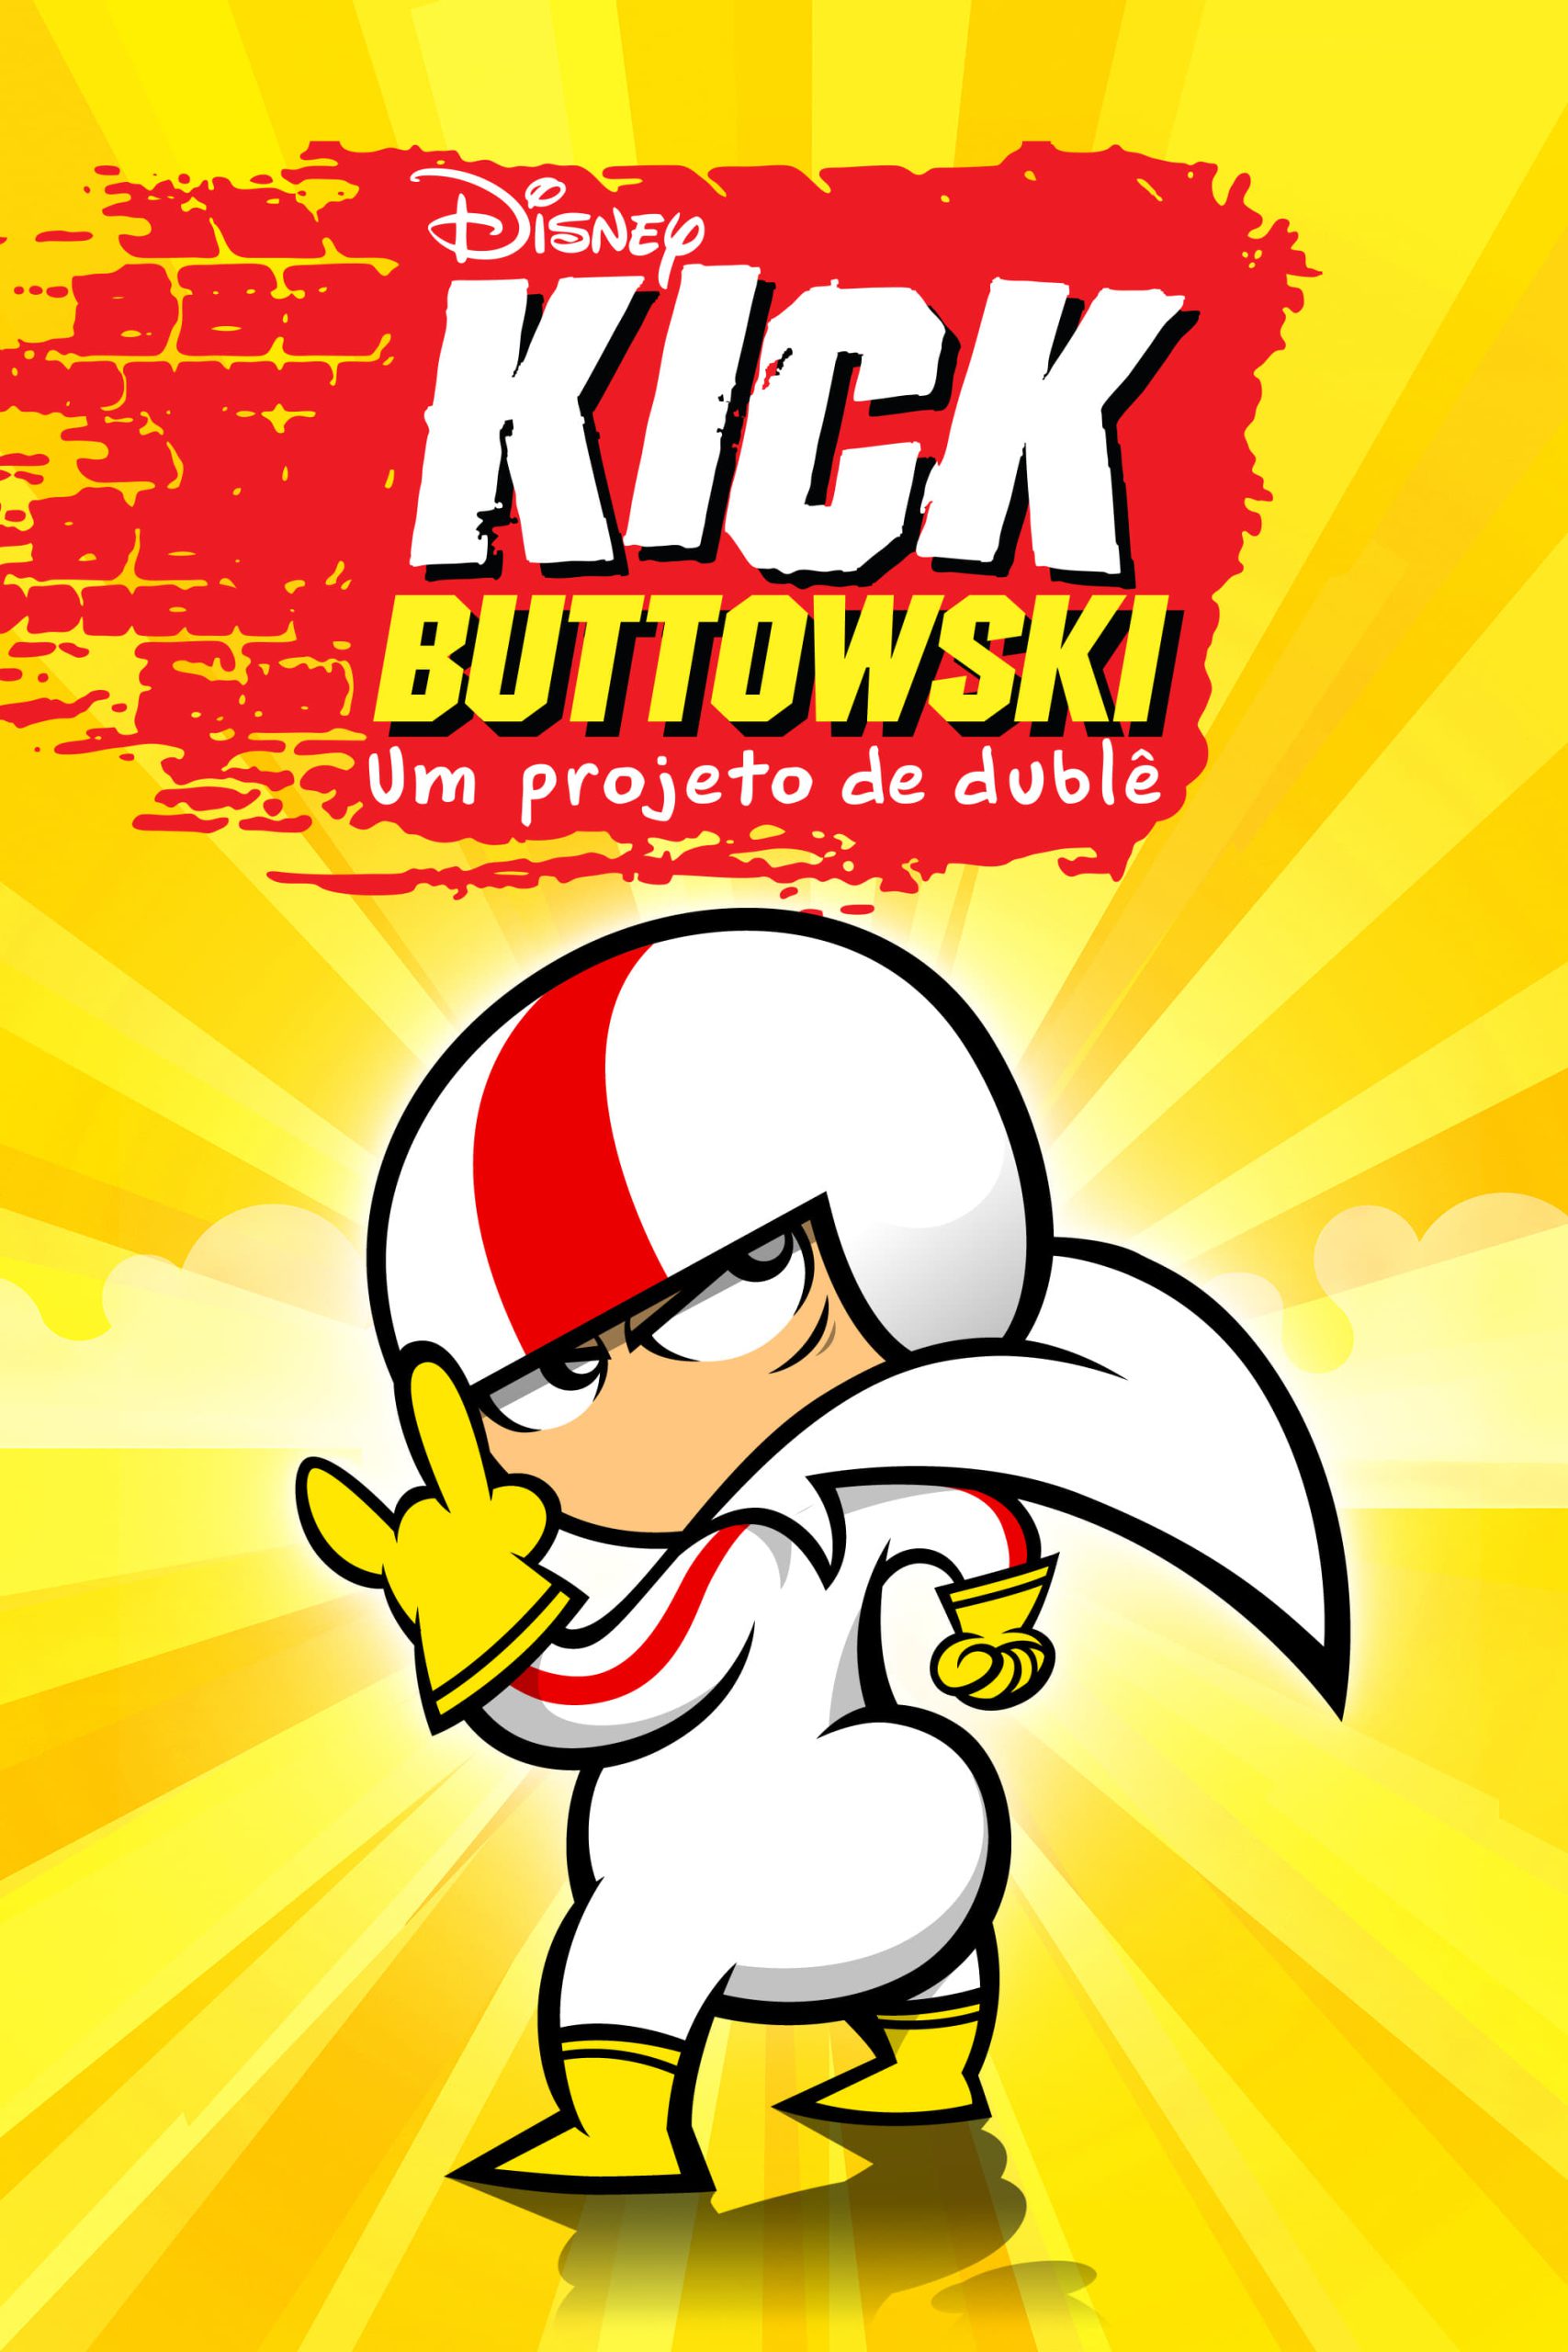 Kick Buttowski: Um Projeto de Duble S1